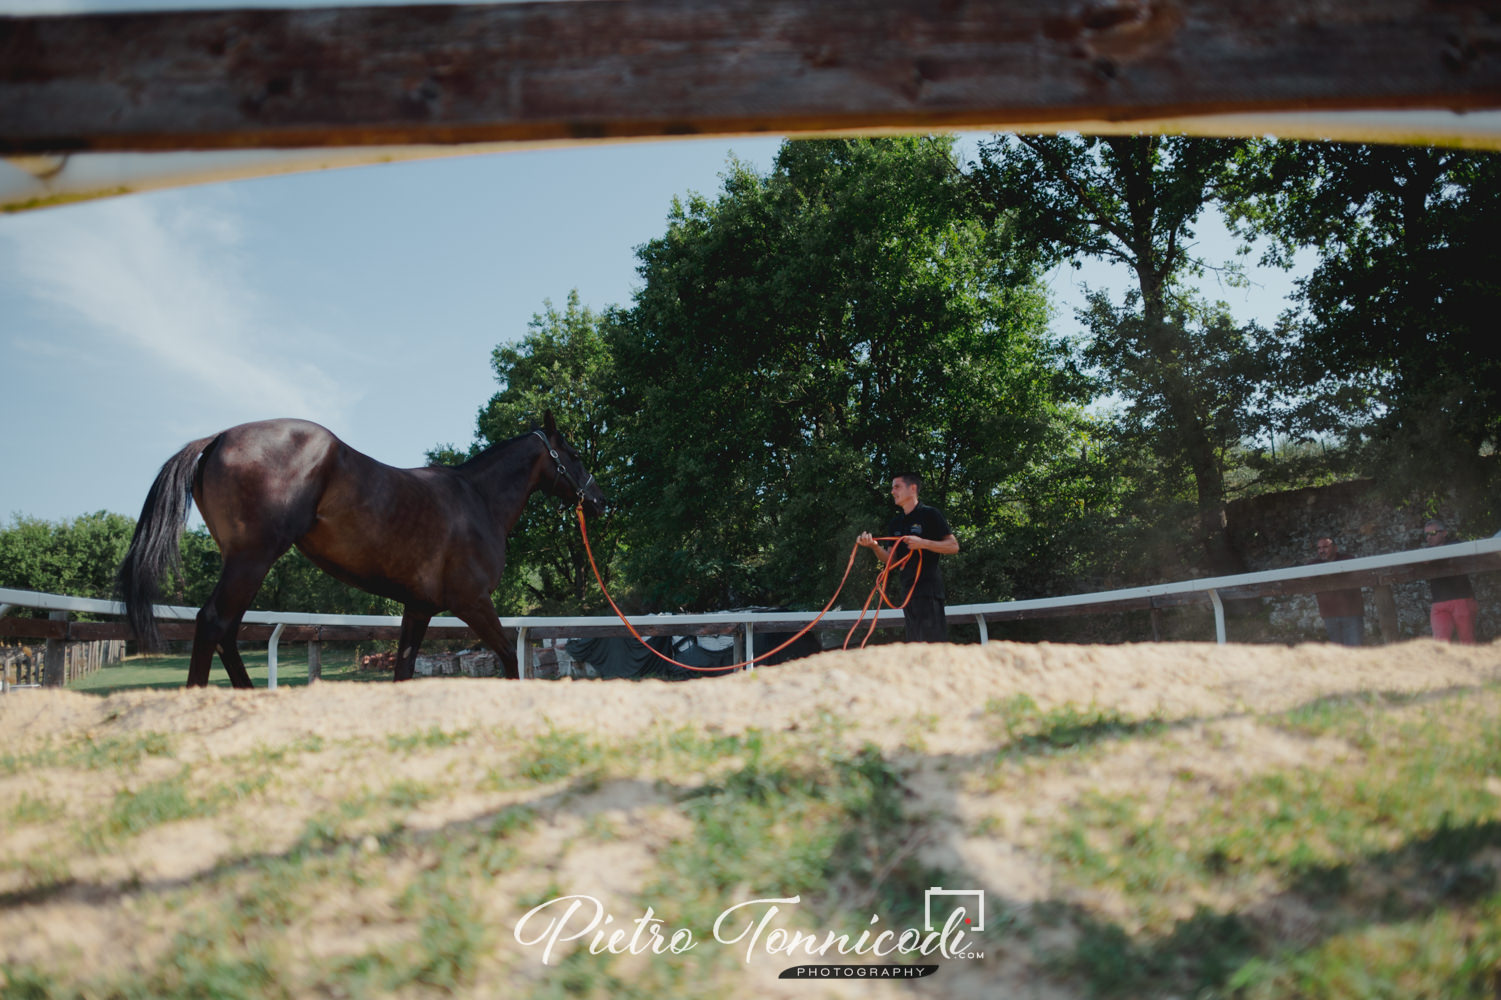 Da oggi in Toscana è possibile allenare e addestrare i cavalli